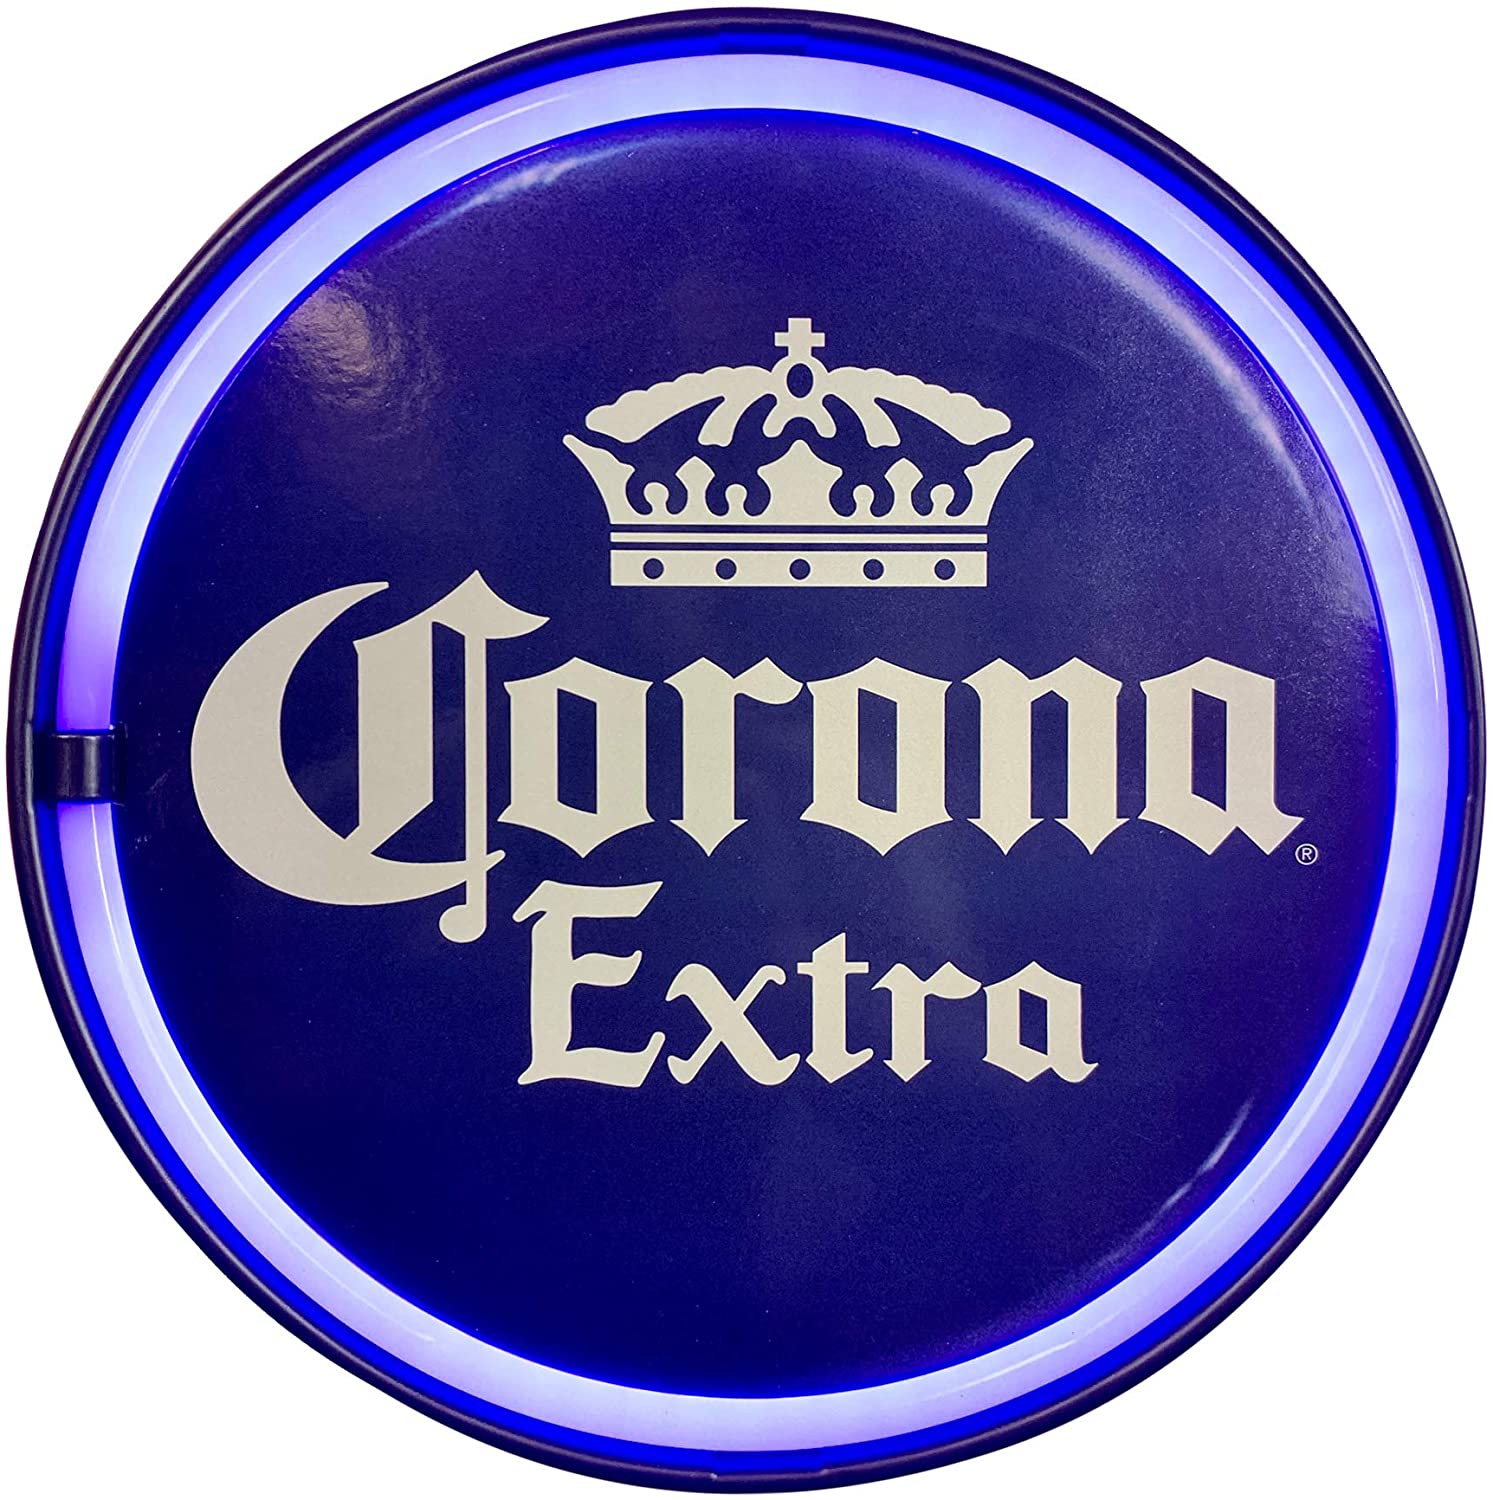 Neon LED Rope - Corona Extra Round